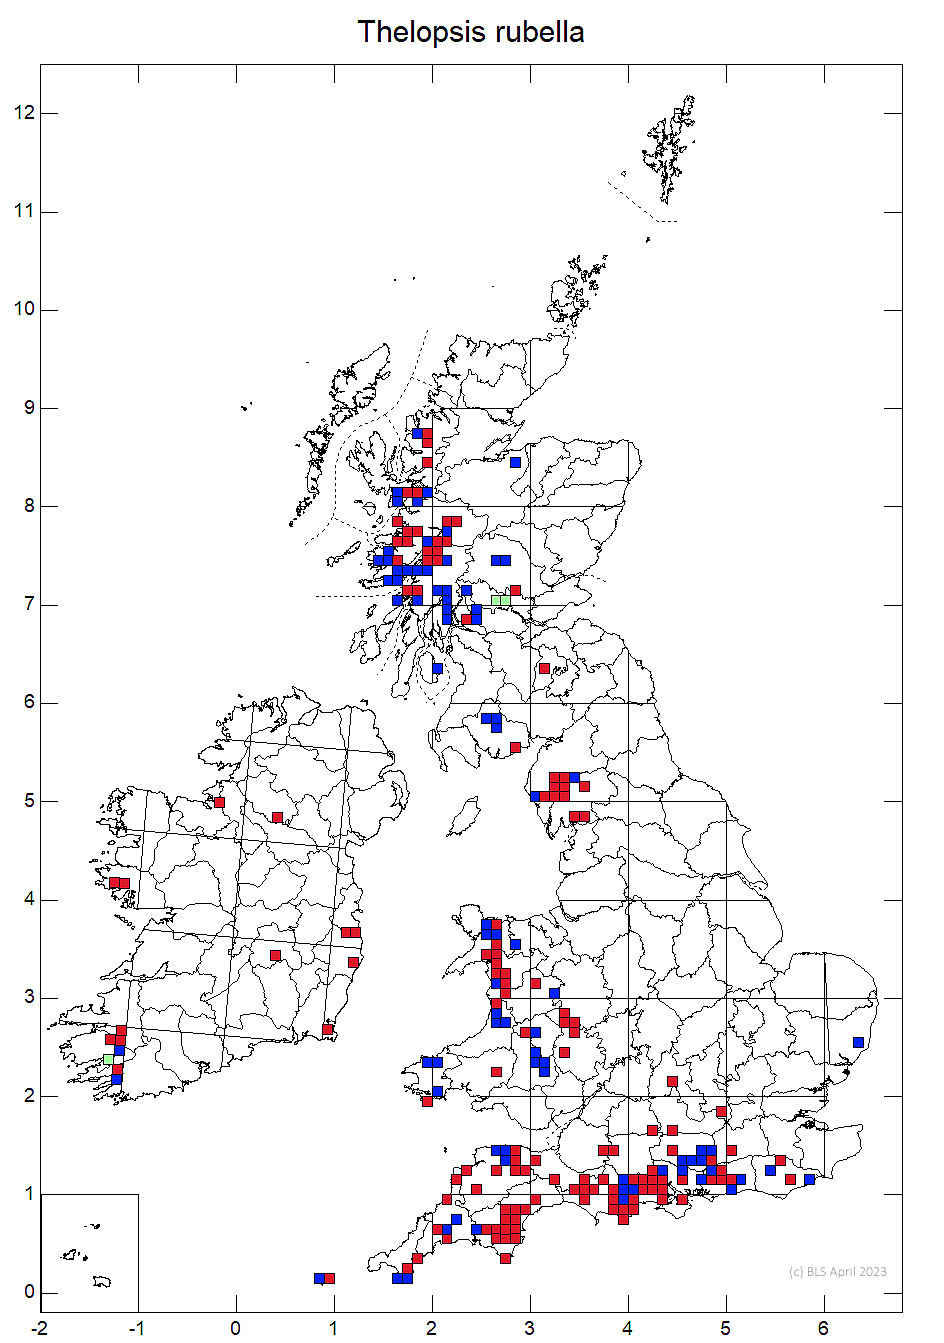 Thelopsis rubella 10km sq distribution map